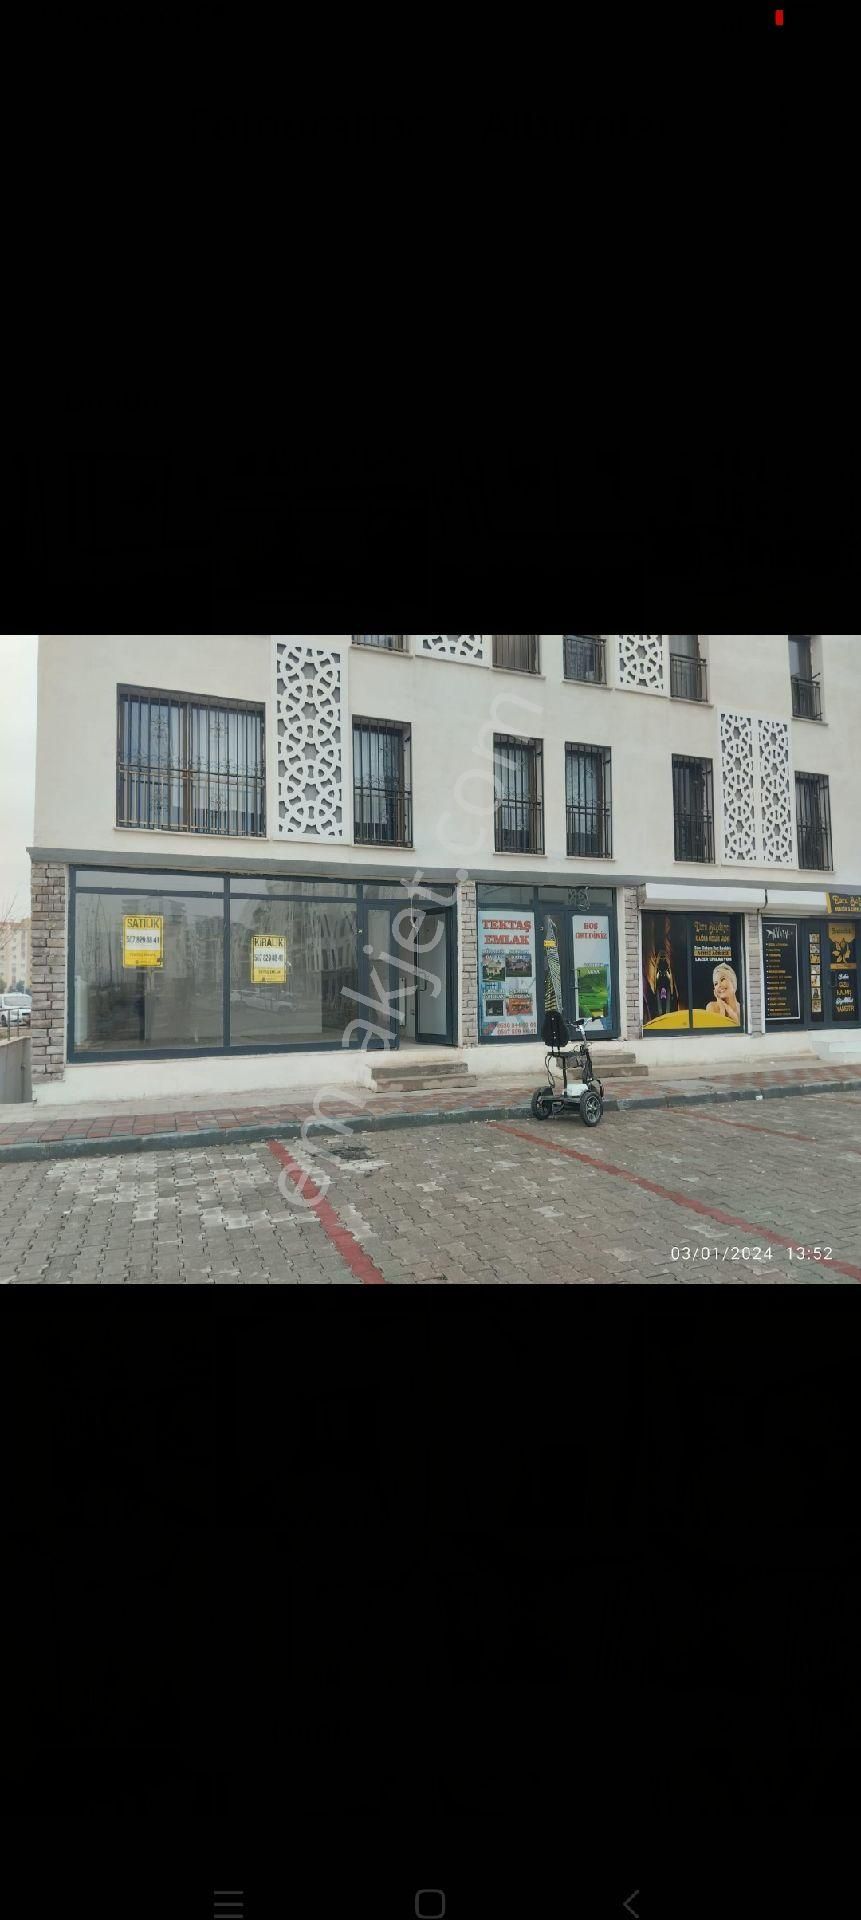 Kayapınar Talaytepe Satılık Dükkan & Mağaza araştırma hastanesi karşısında satılık 50 metre dükkan araba ve daire takasa açık 